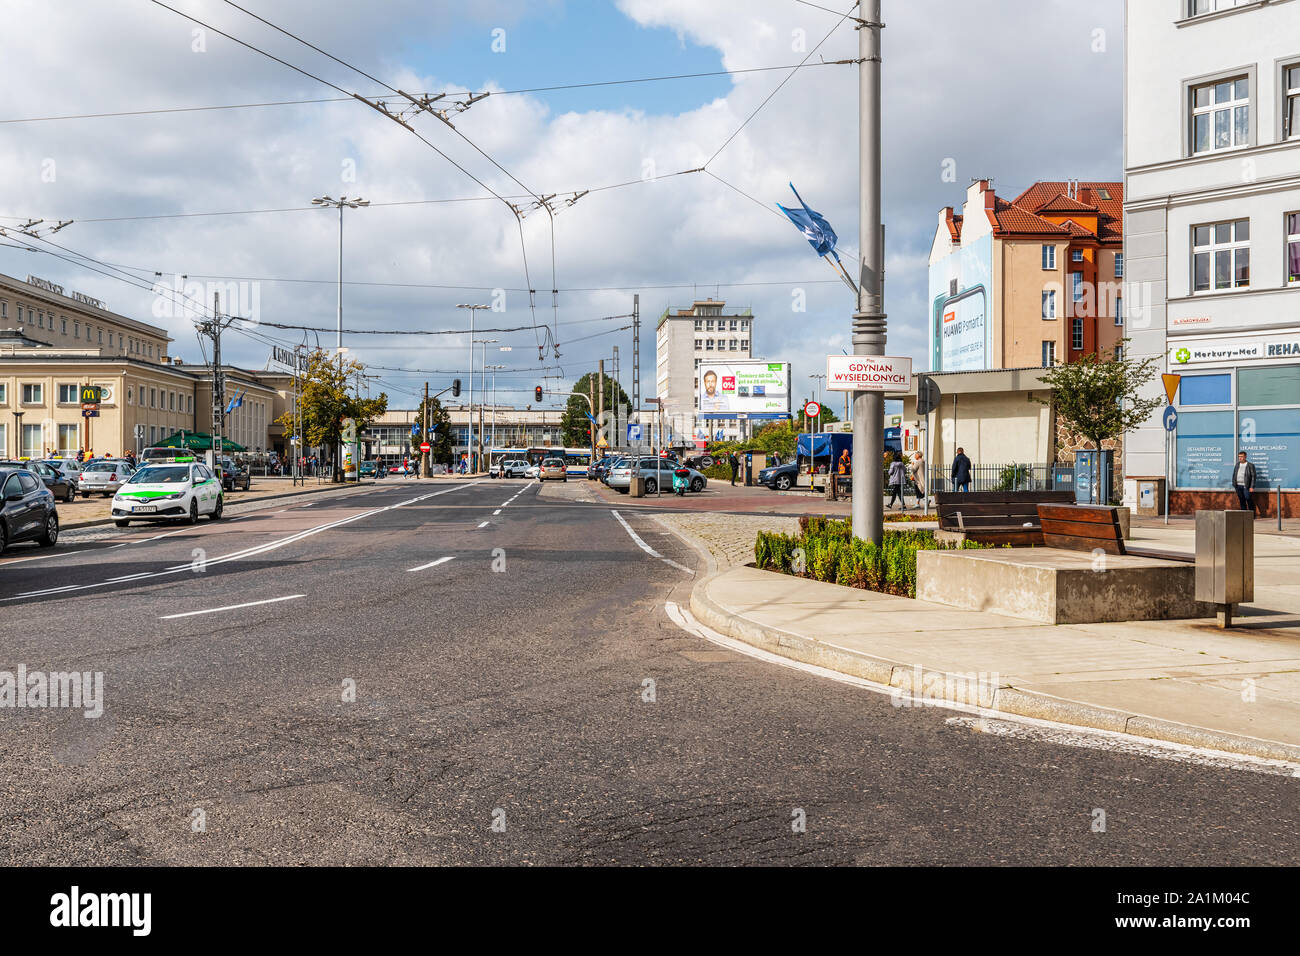 Gdynia, Polen - September 16, 2019: Blick auf der Straße vor dem Hauptbahnhof in Gdynia, Polen. Stockfoto